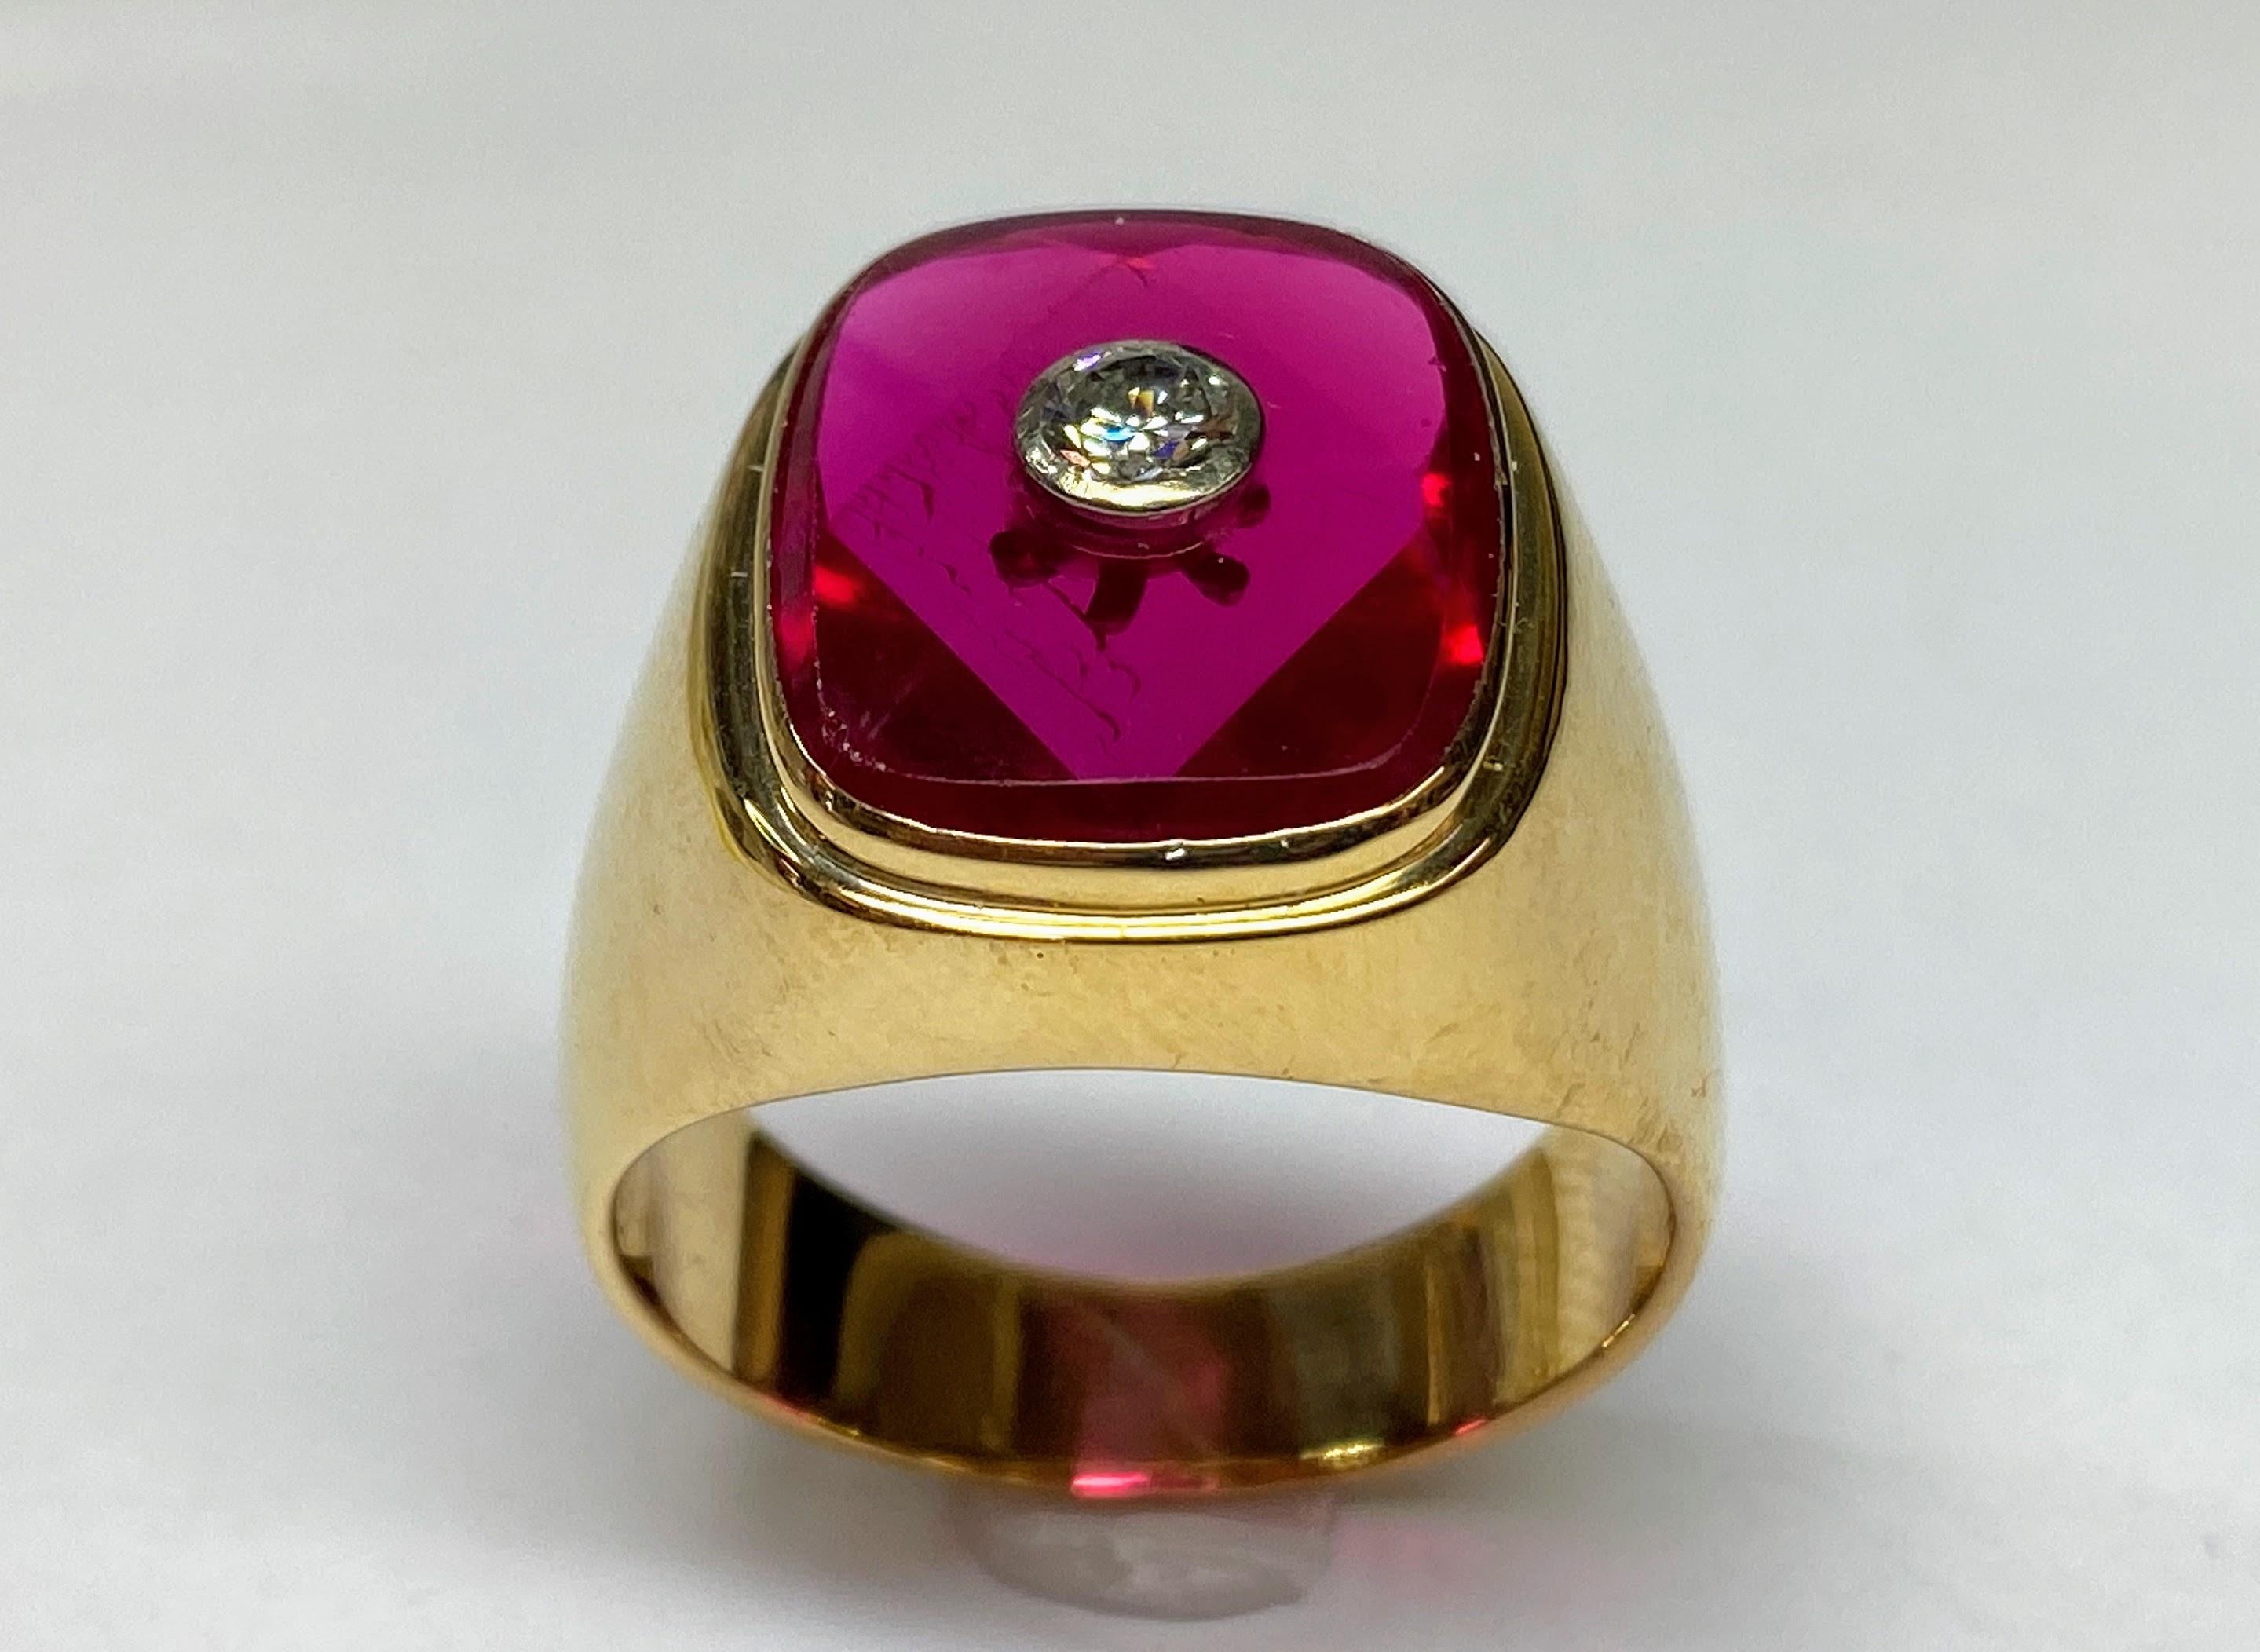 18K Gelbgold 5,73TCW Erstellt Rubin & Brillant Diamant Ring Größe - 12,5

Dieser vornehme Siegelring aus prächtigem 18-karätigem Gelbgold verbindet klassisches Design mit modernem Flair und ist für eine Ringgröße von 12,5 geeignet. Er präsentiert